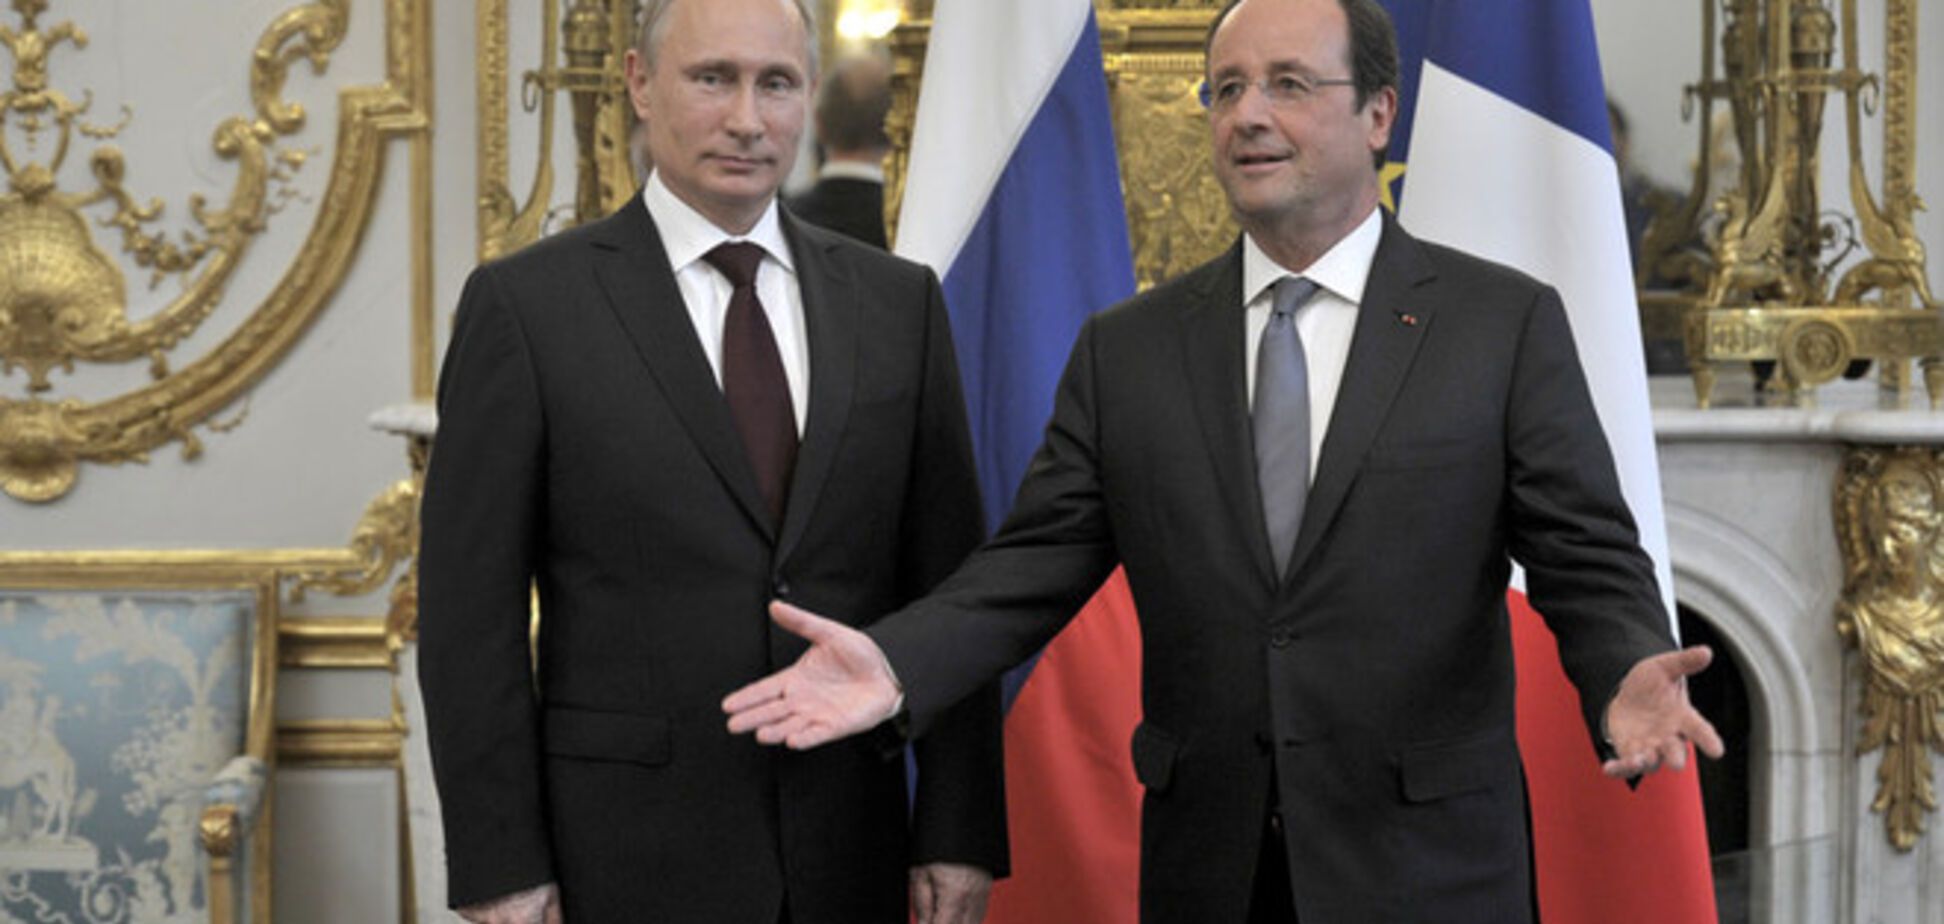 Олланд потребовал от Путина уважать территориальную целостность Украины